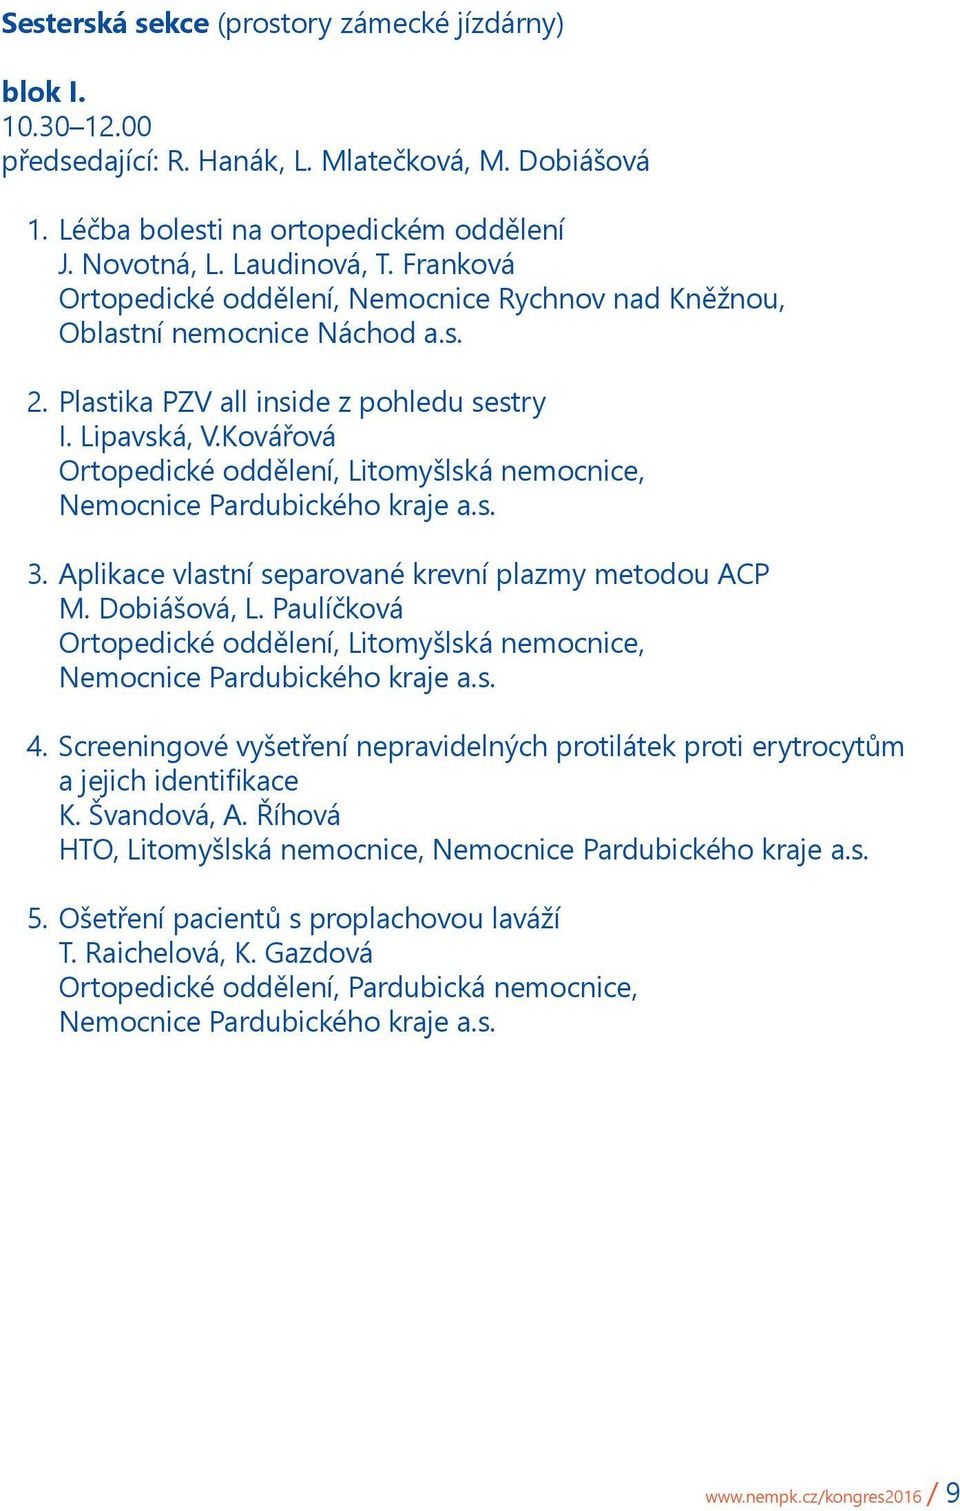 Aplikace vlastní separované krevní plazmy metodou ACP M. Dobiášová, L. Paulíčková 4. Screeningové vyšetření nepravidelných protilátek proti erytrocytům a jejich identifikace K.